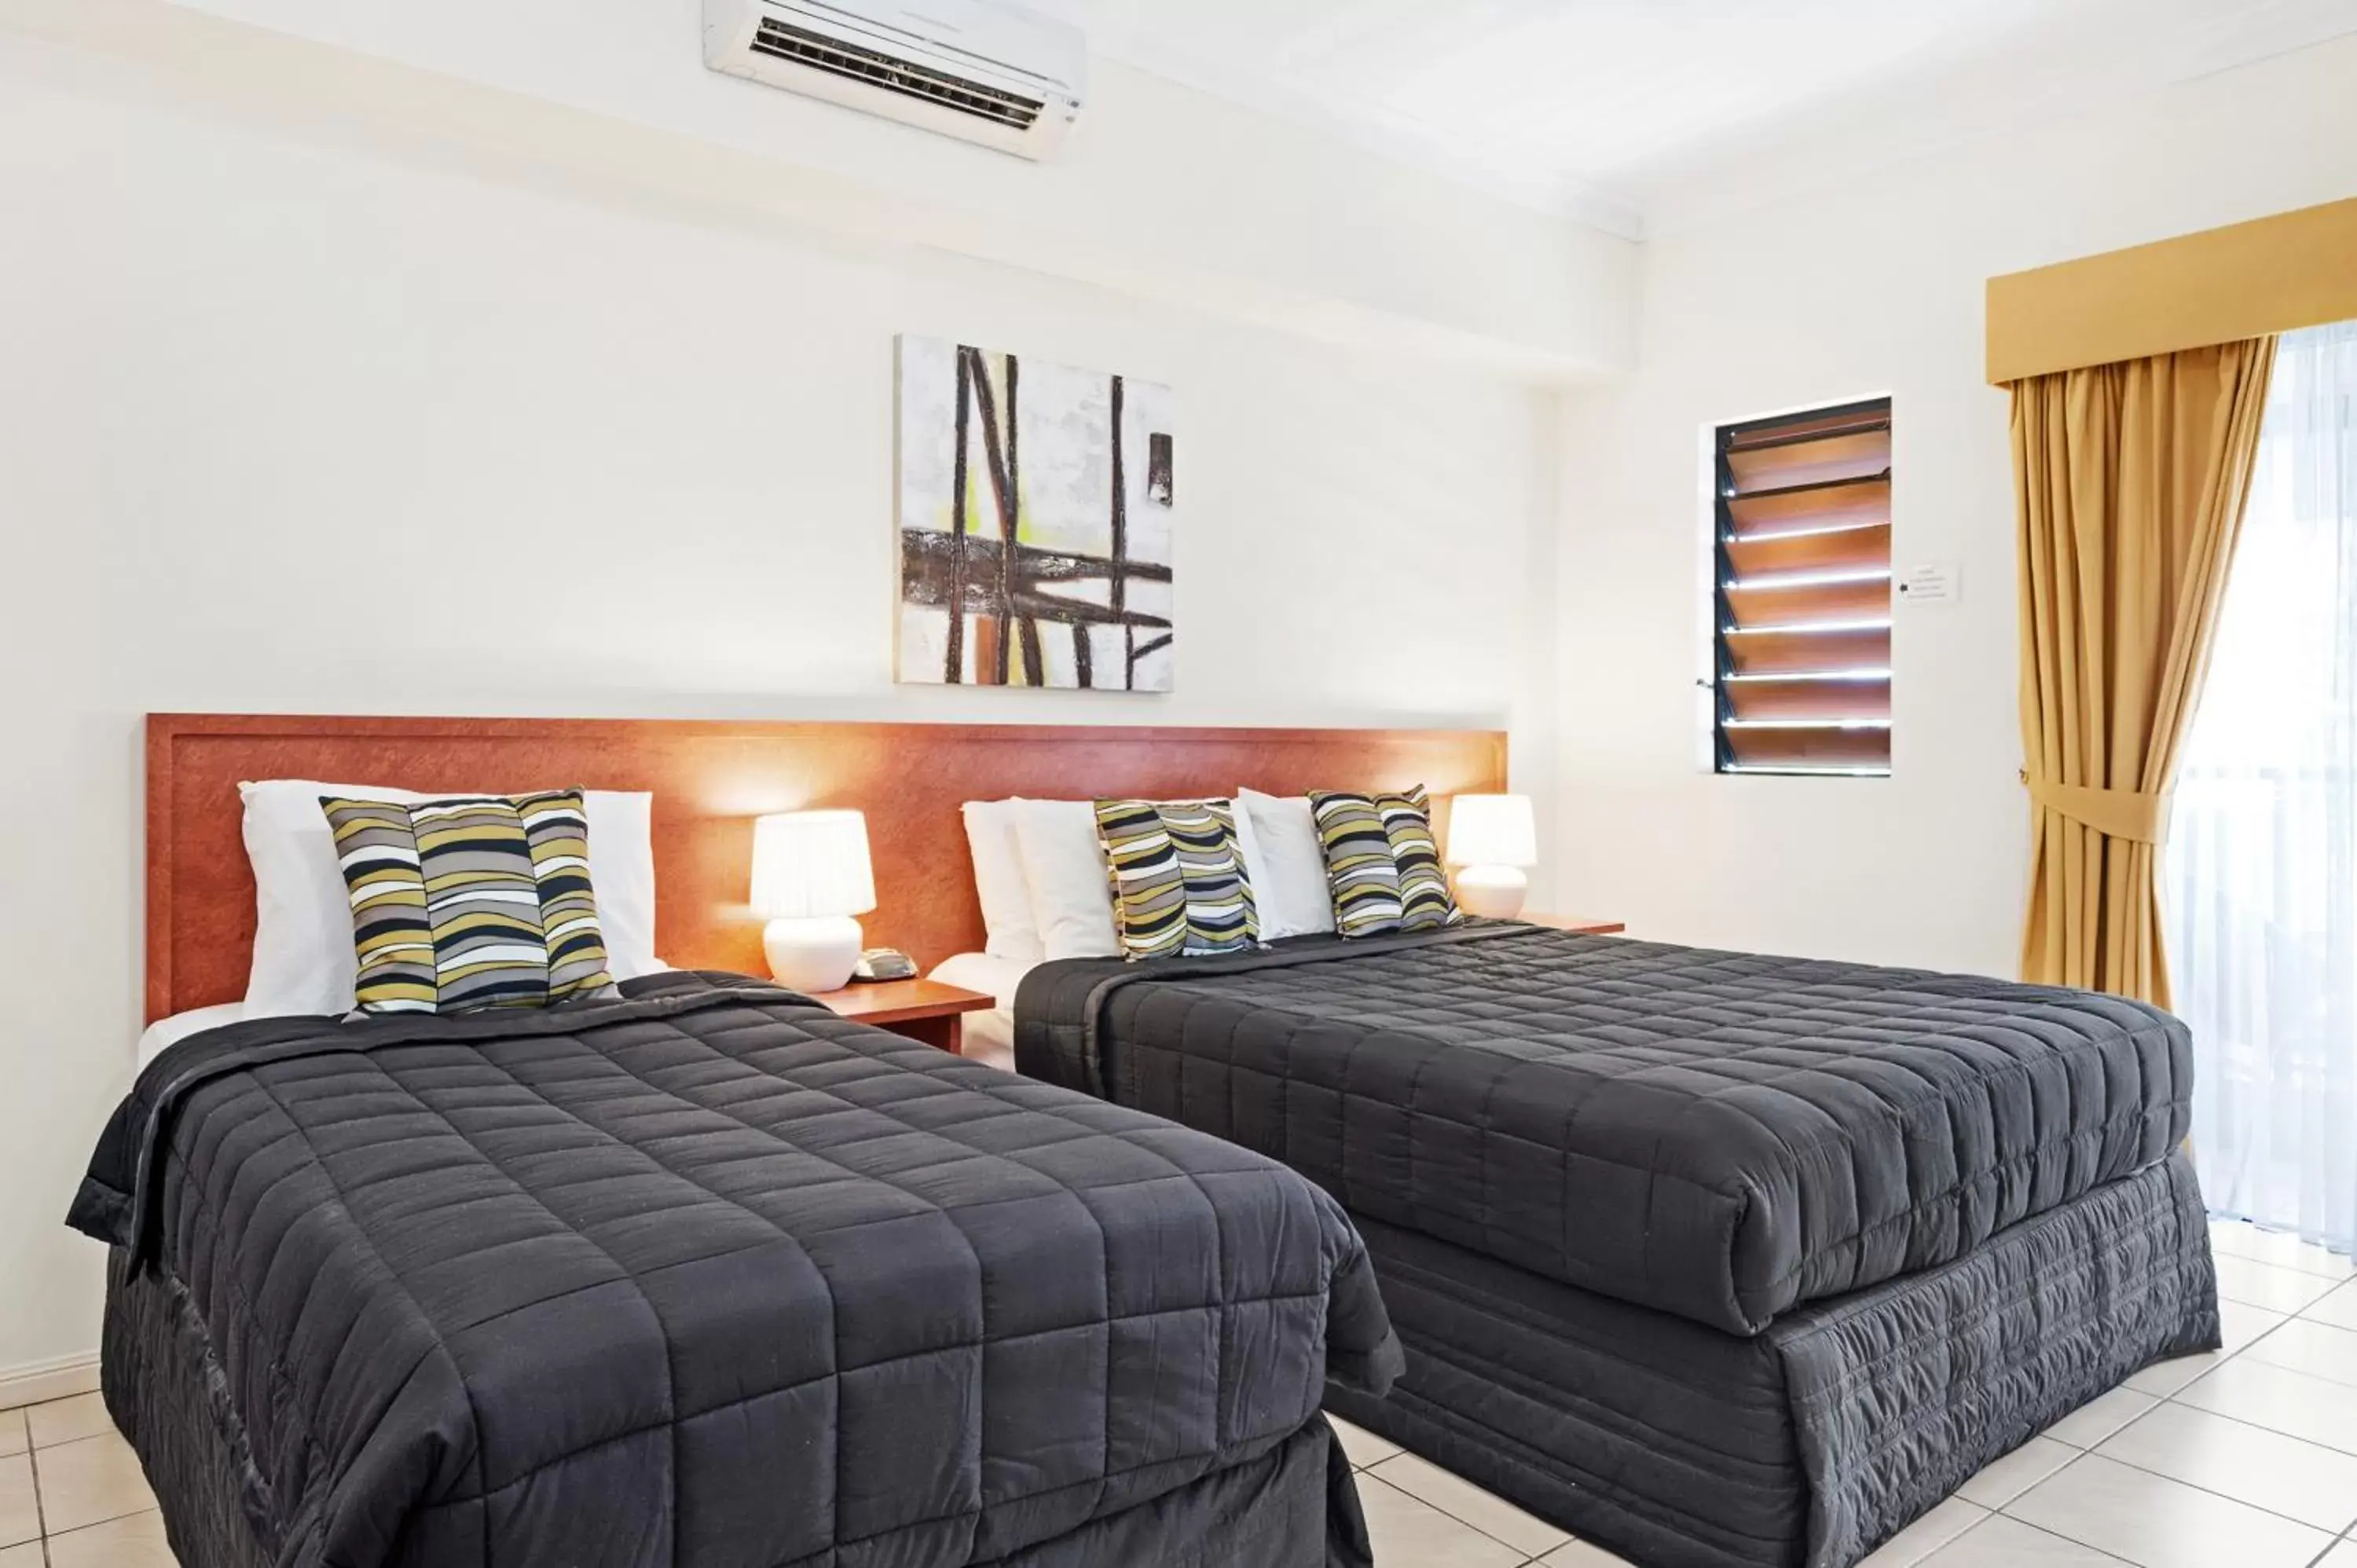 Bedroom, Room Photo in Cairns Queens Court